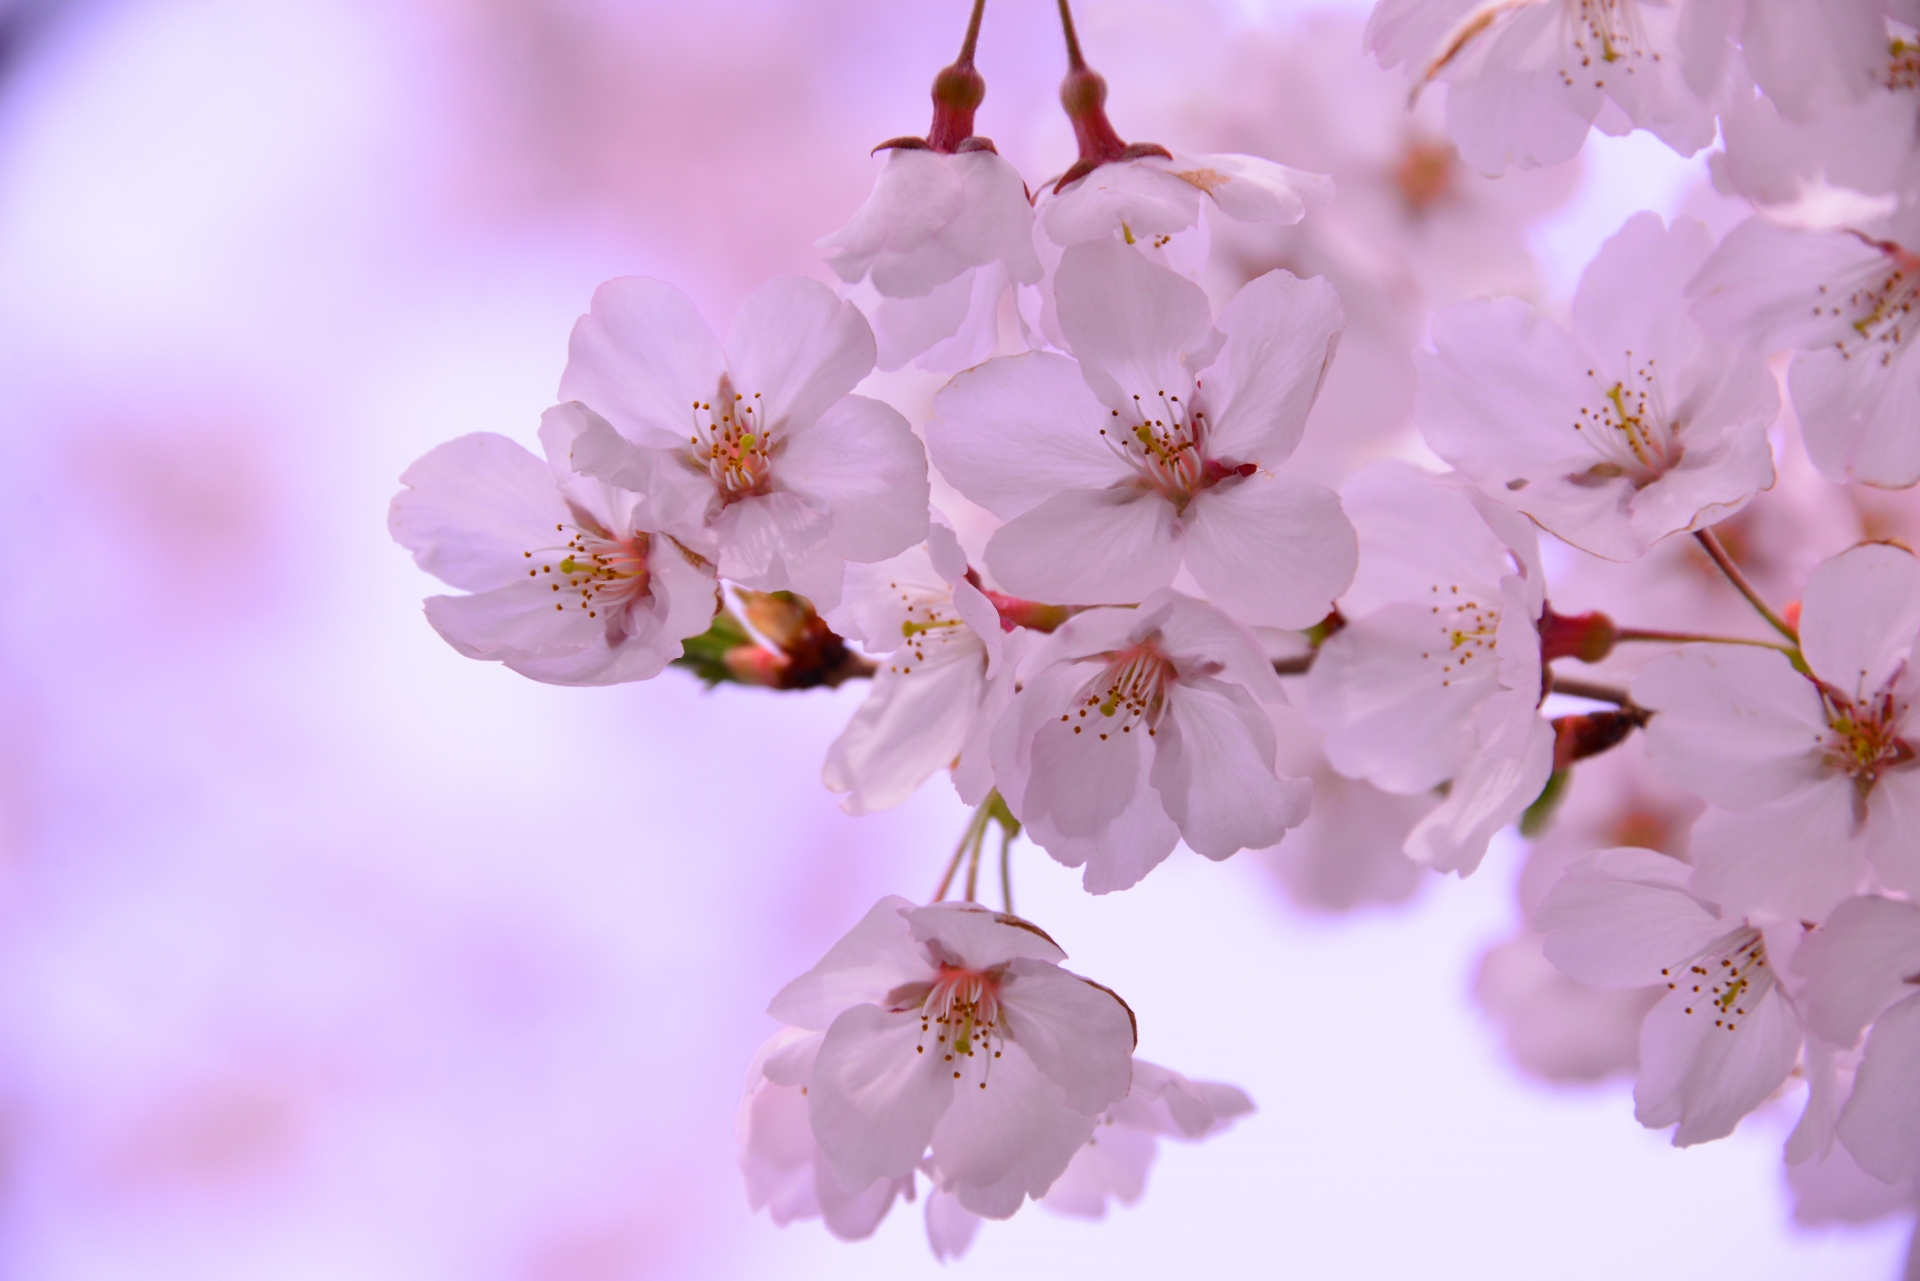 歌曲 さくらさくら 日本の桜の美しさを歌いあげよう 歌詞の意味と歌唱ポイント ひまわり日本のうた